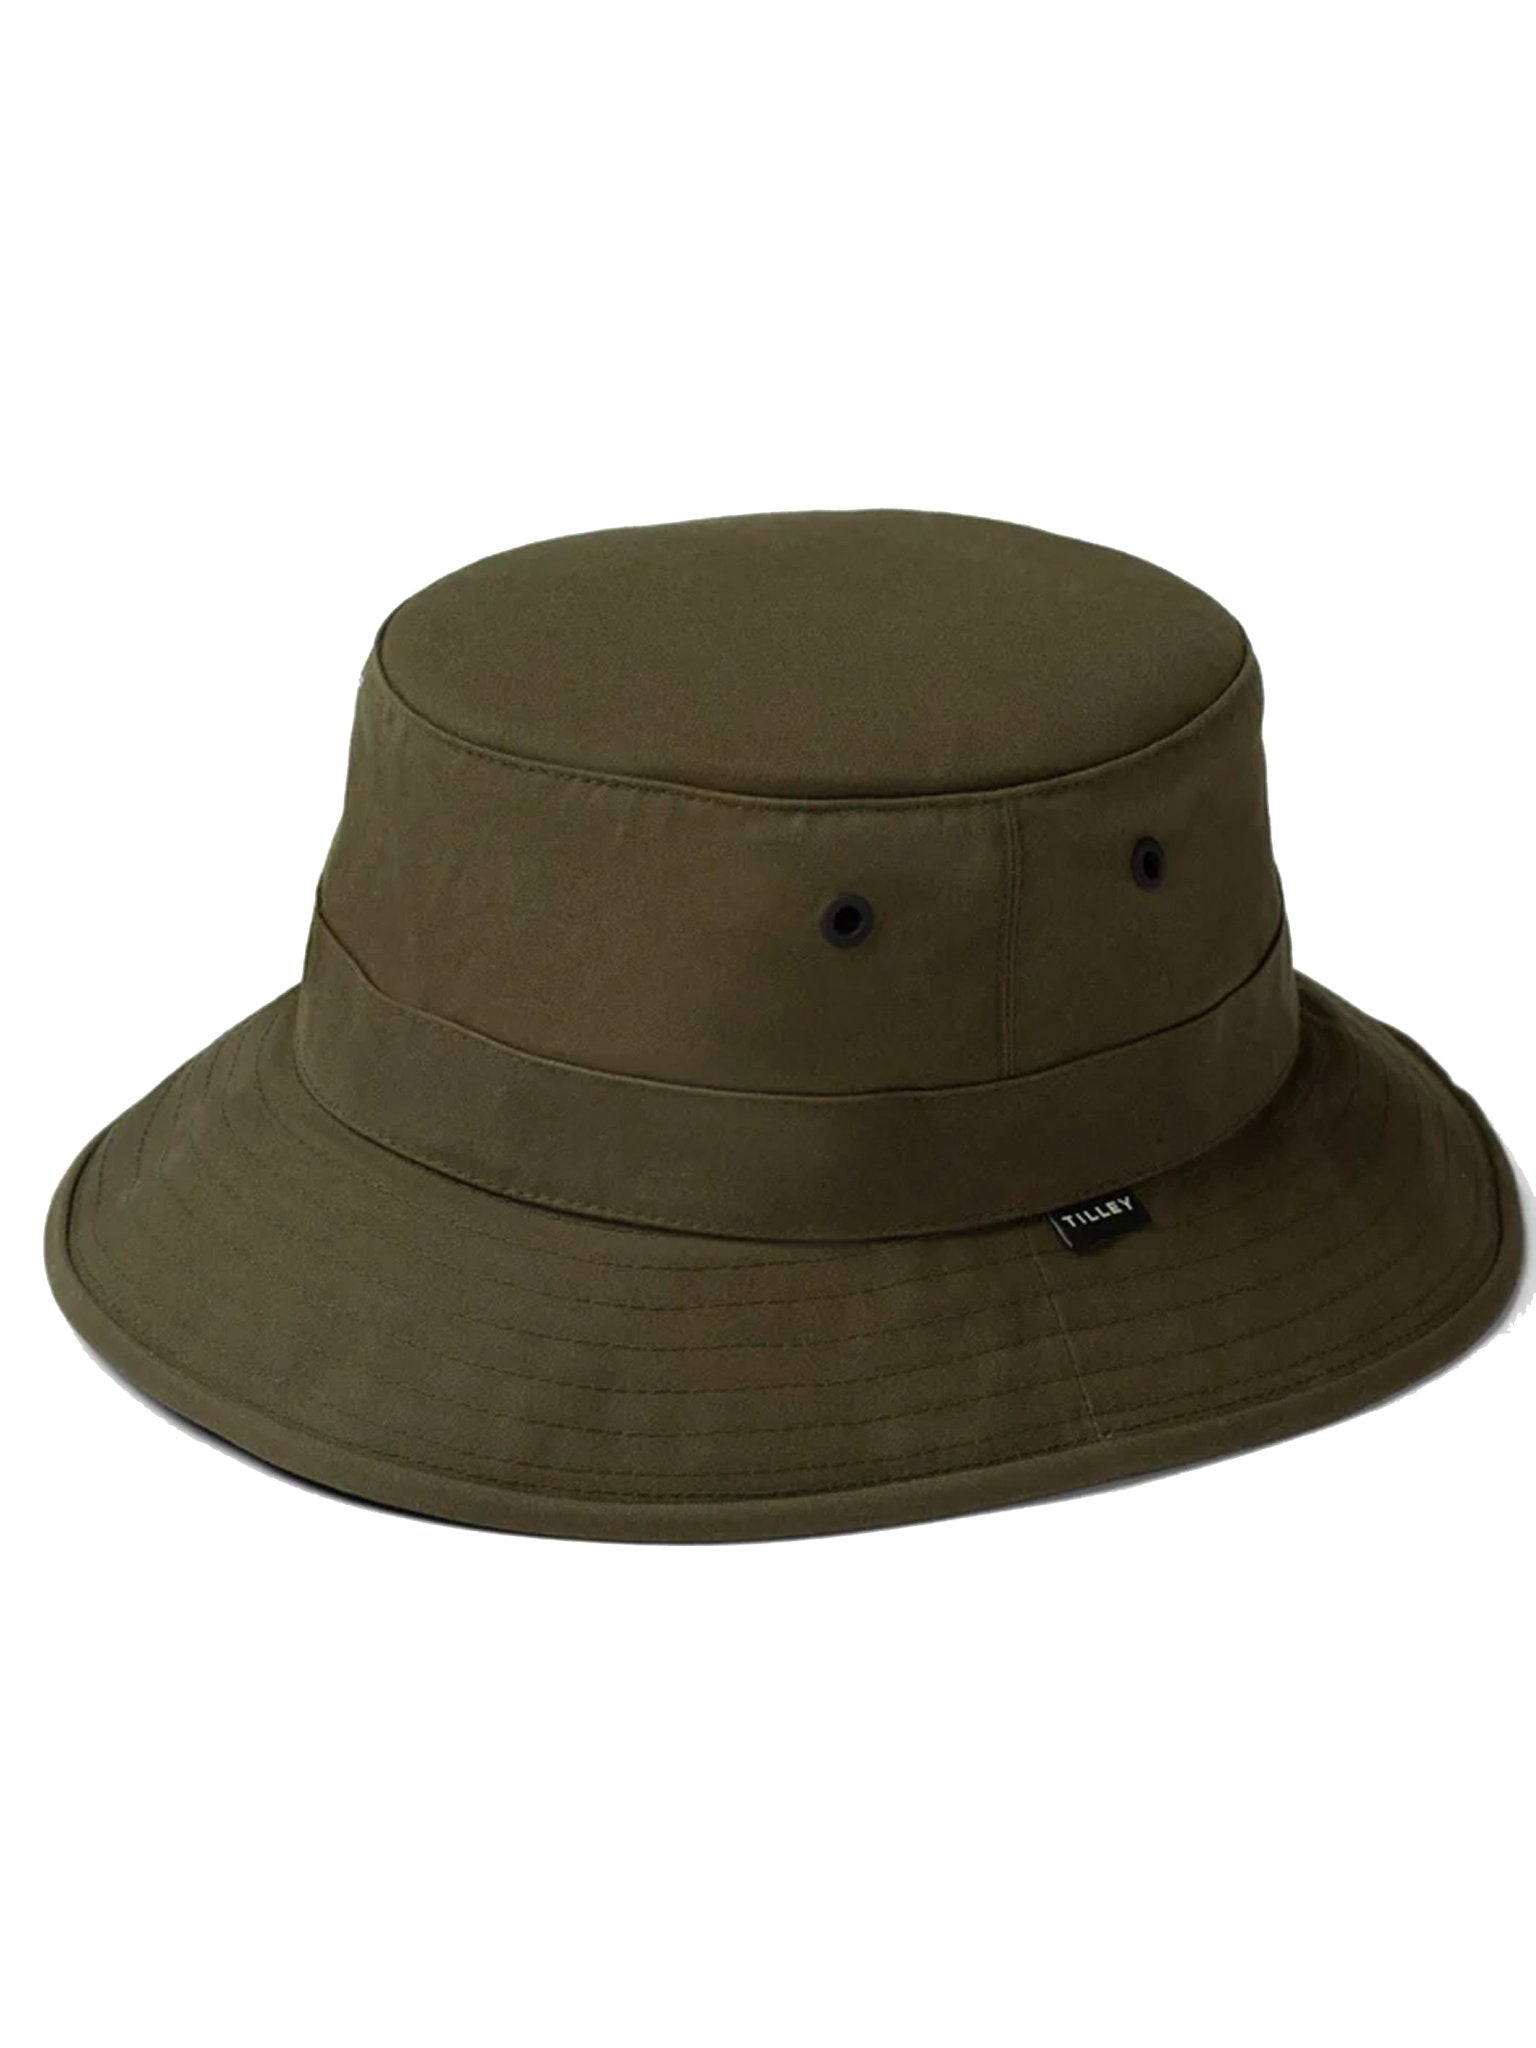 4elementsclothingTilleyTilley - Waxed Cotton Bucket Hat / Tilley Sun hatHats826486582805